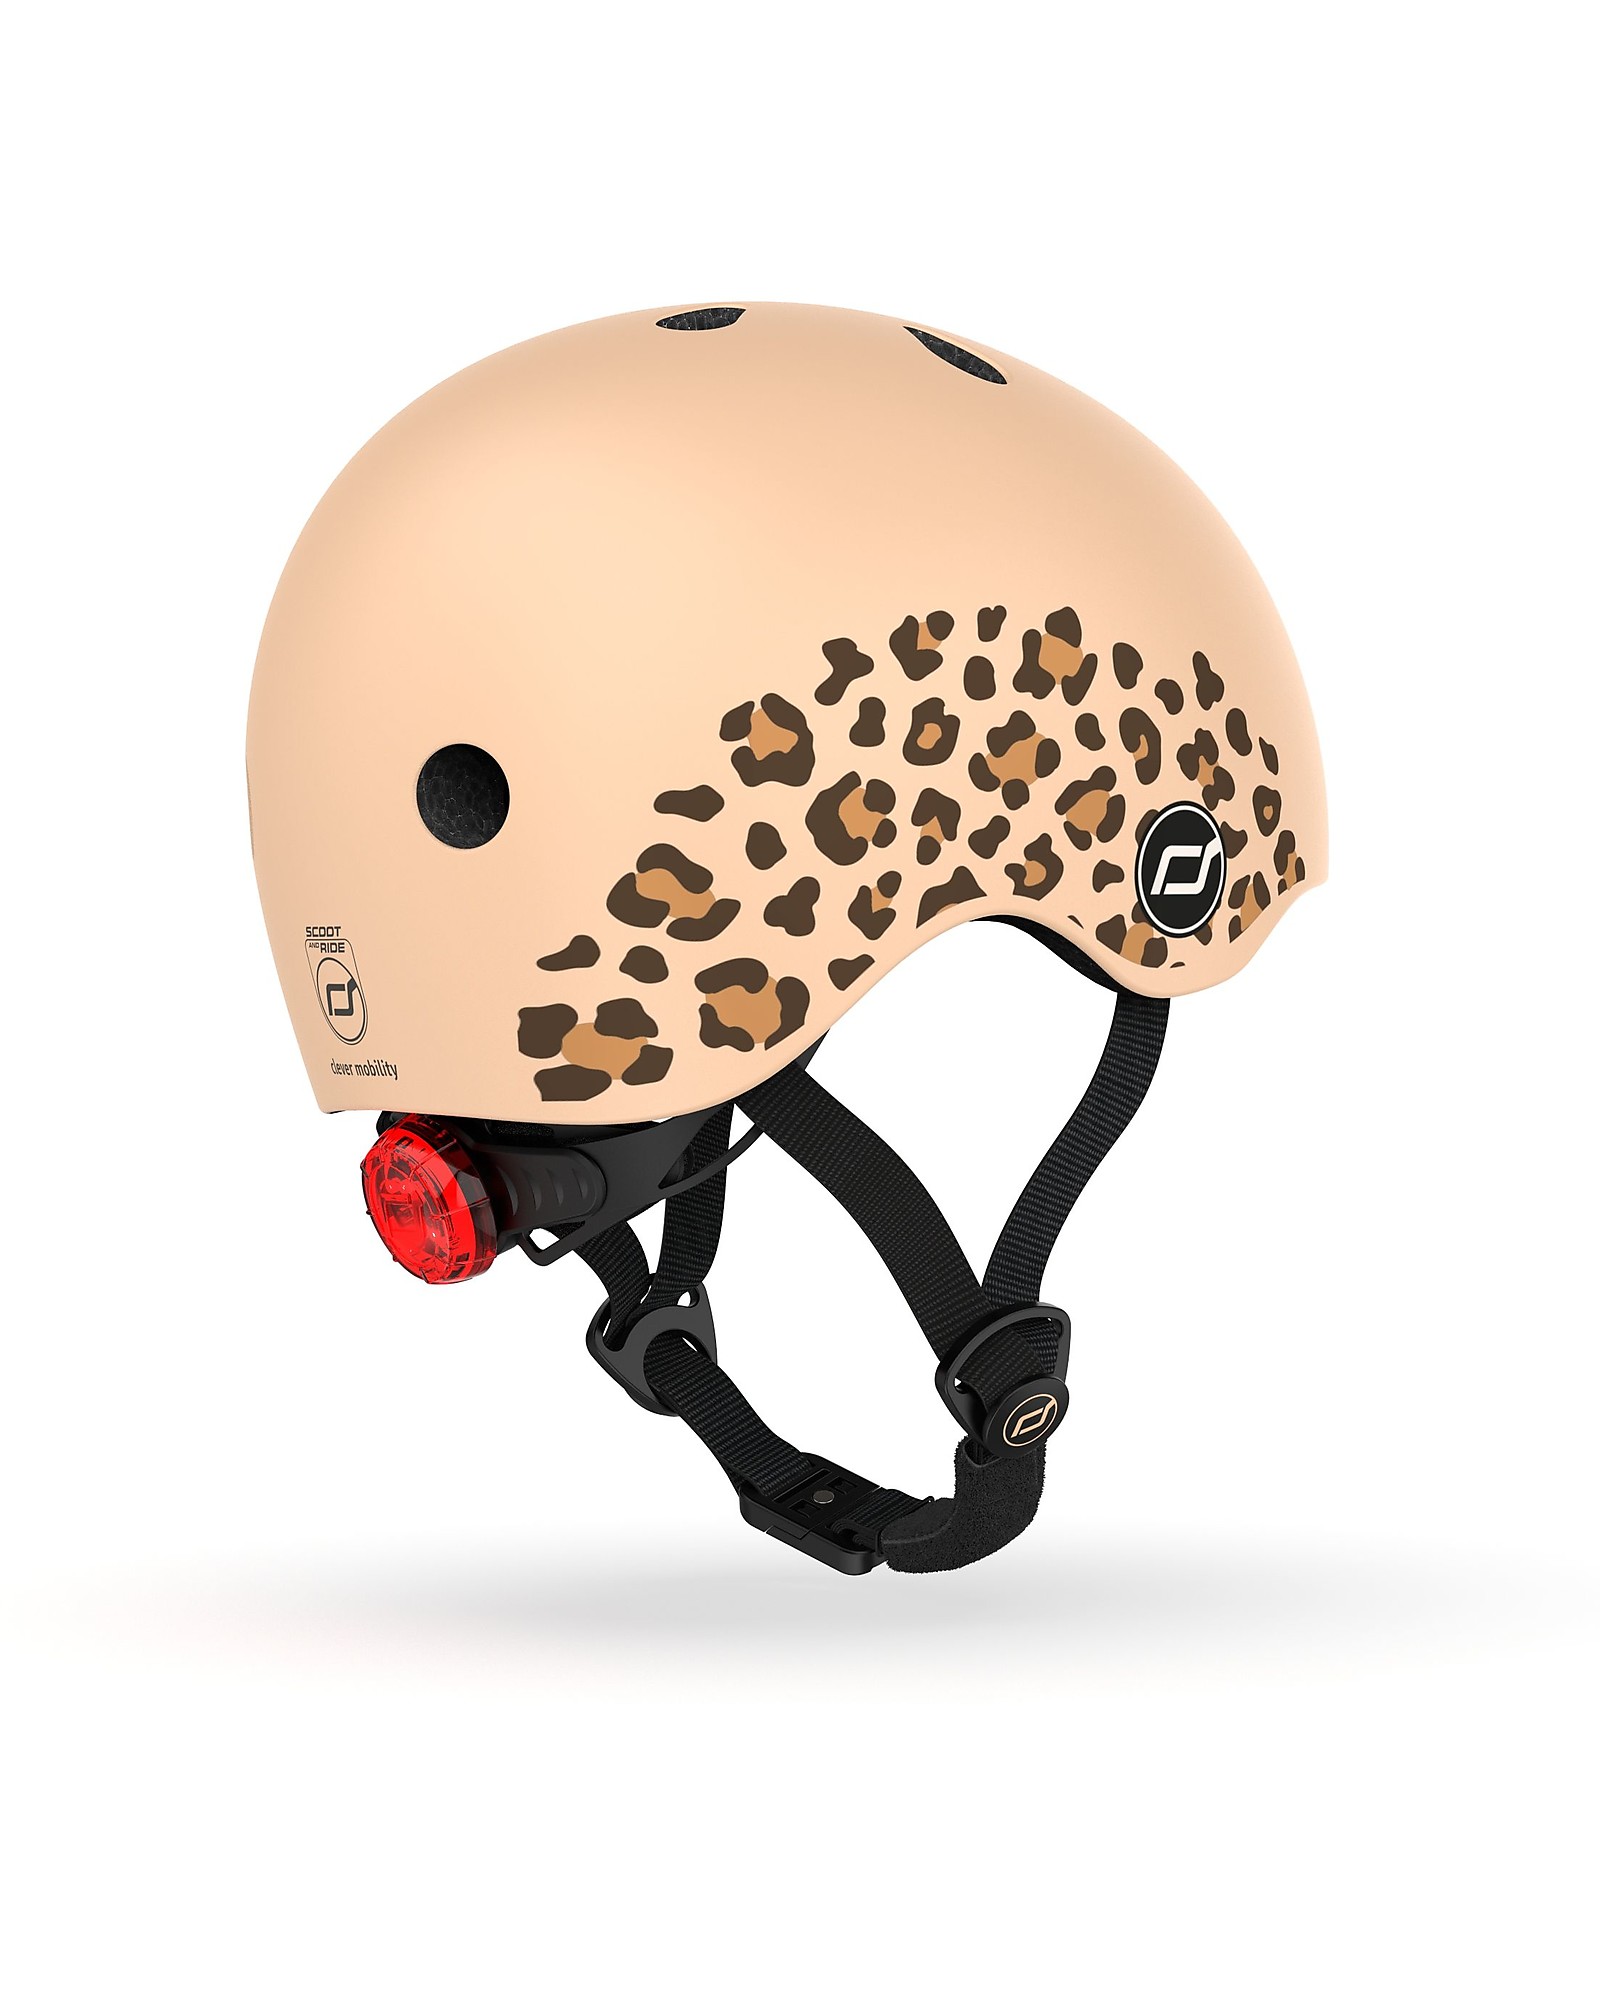 Peregrination profiel Veraangenamen Scoot and Ride Baby Helmet XXS-S - Leopard - 45-51cm unisex (bambini)